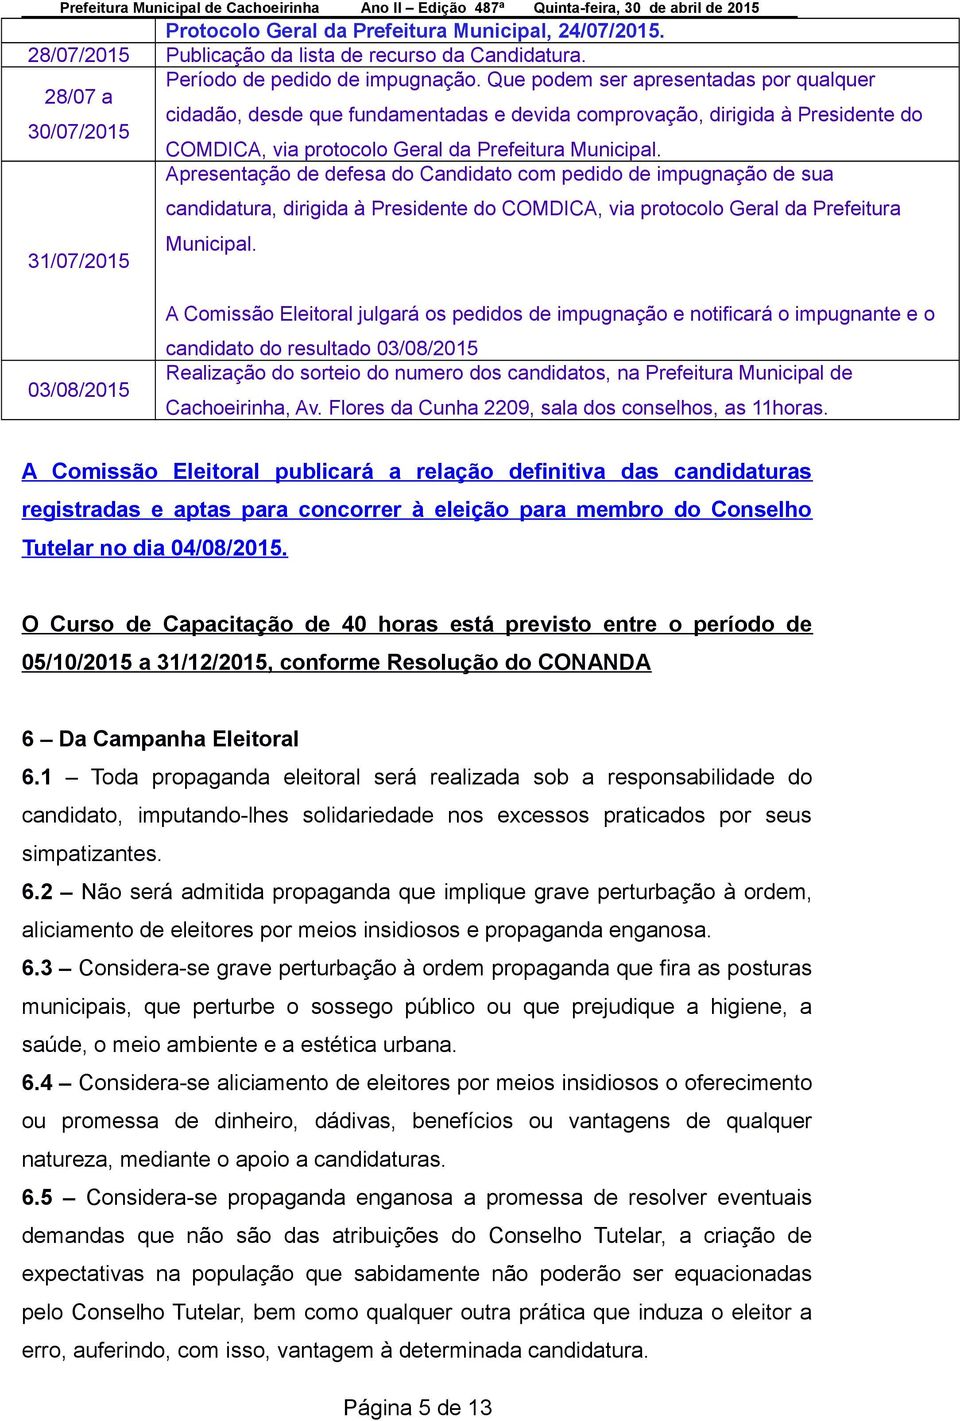 Apresentação de defesa do Candidato com pedido de impugnação de sua candidatura, dirigida à Presidente do COMDICA, via protocolo Geral da Prefeitura 31/07/2015 Municipal.